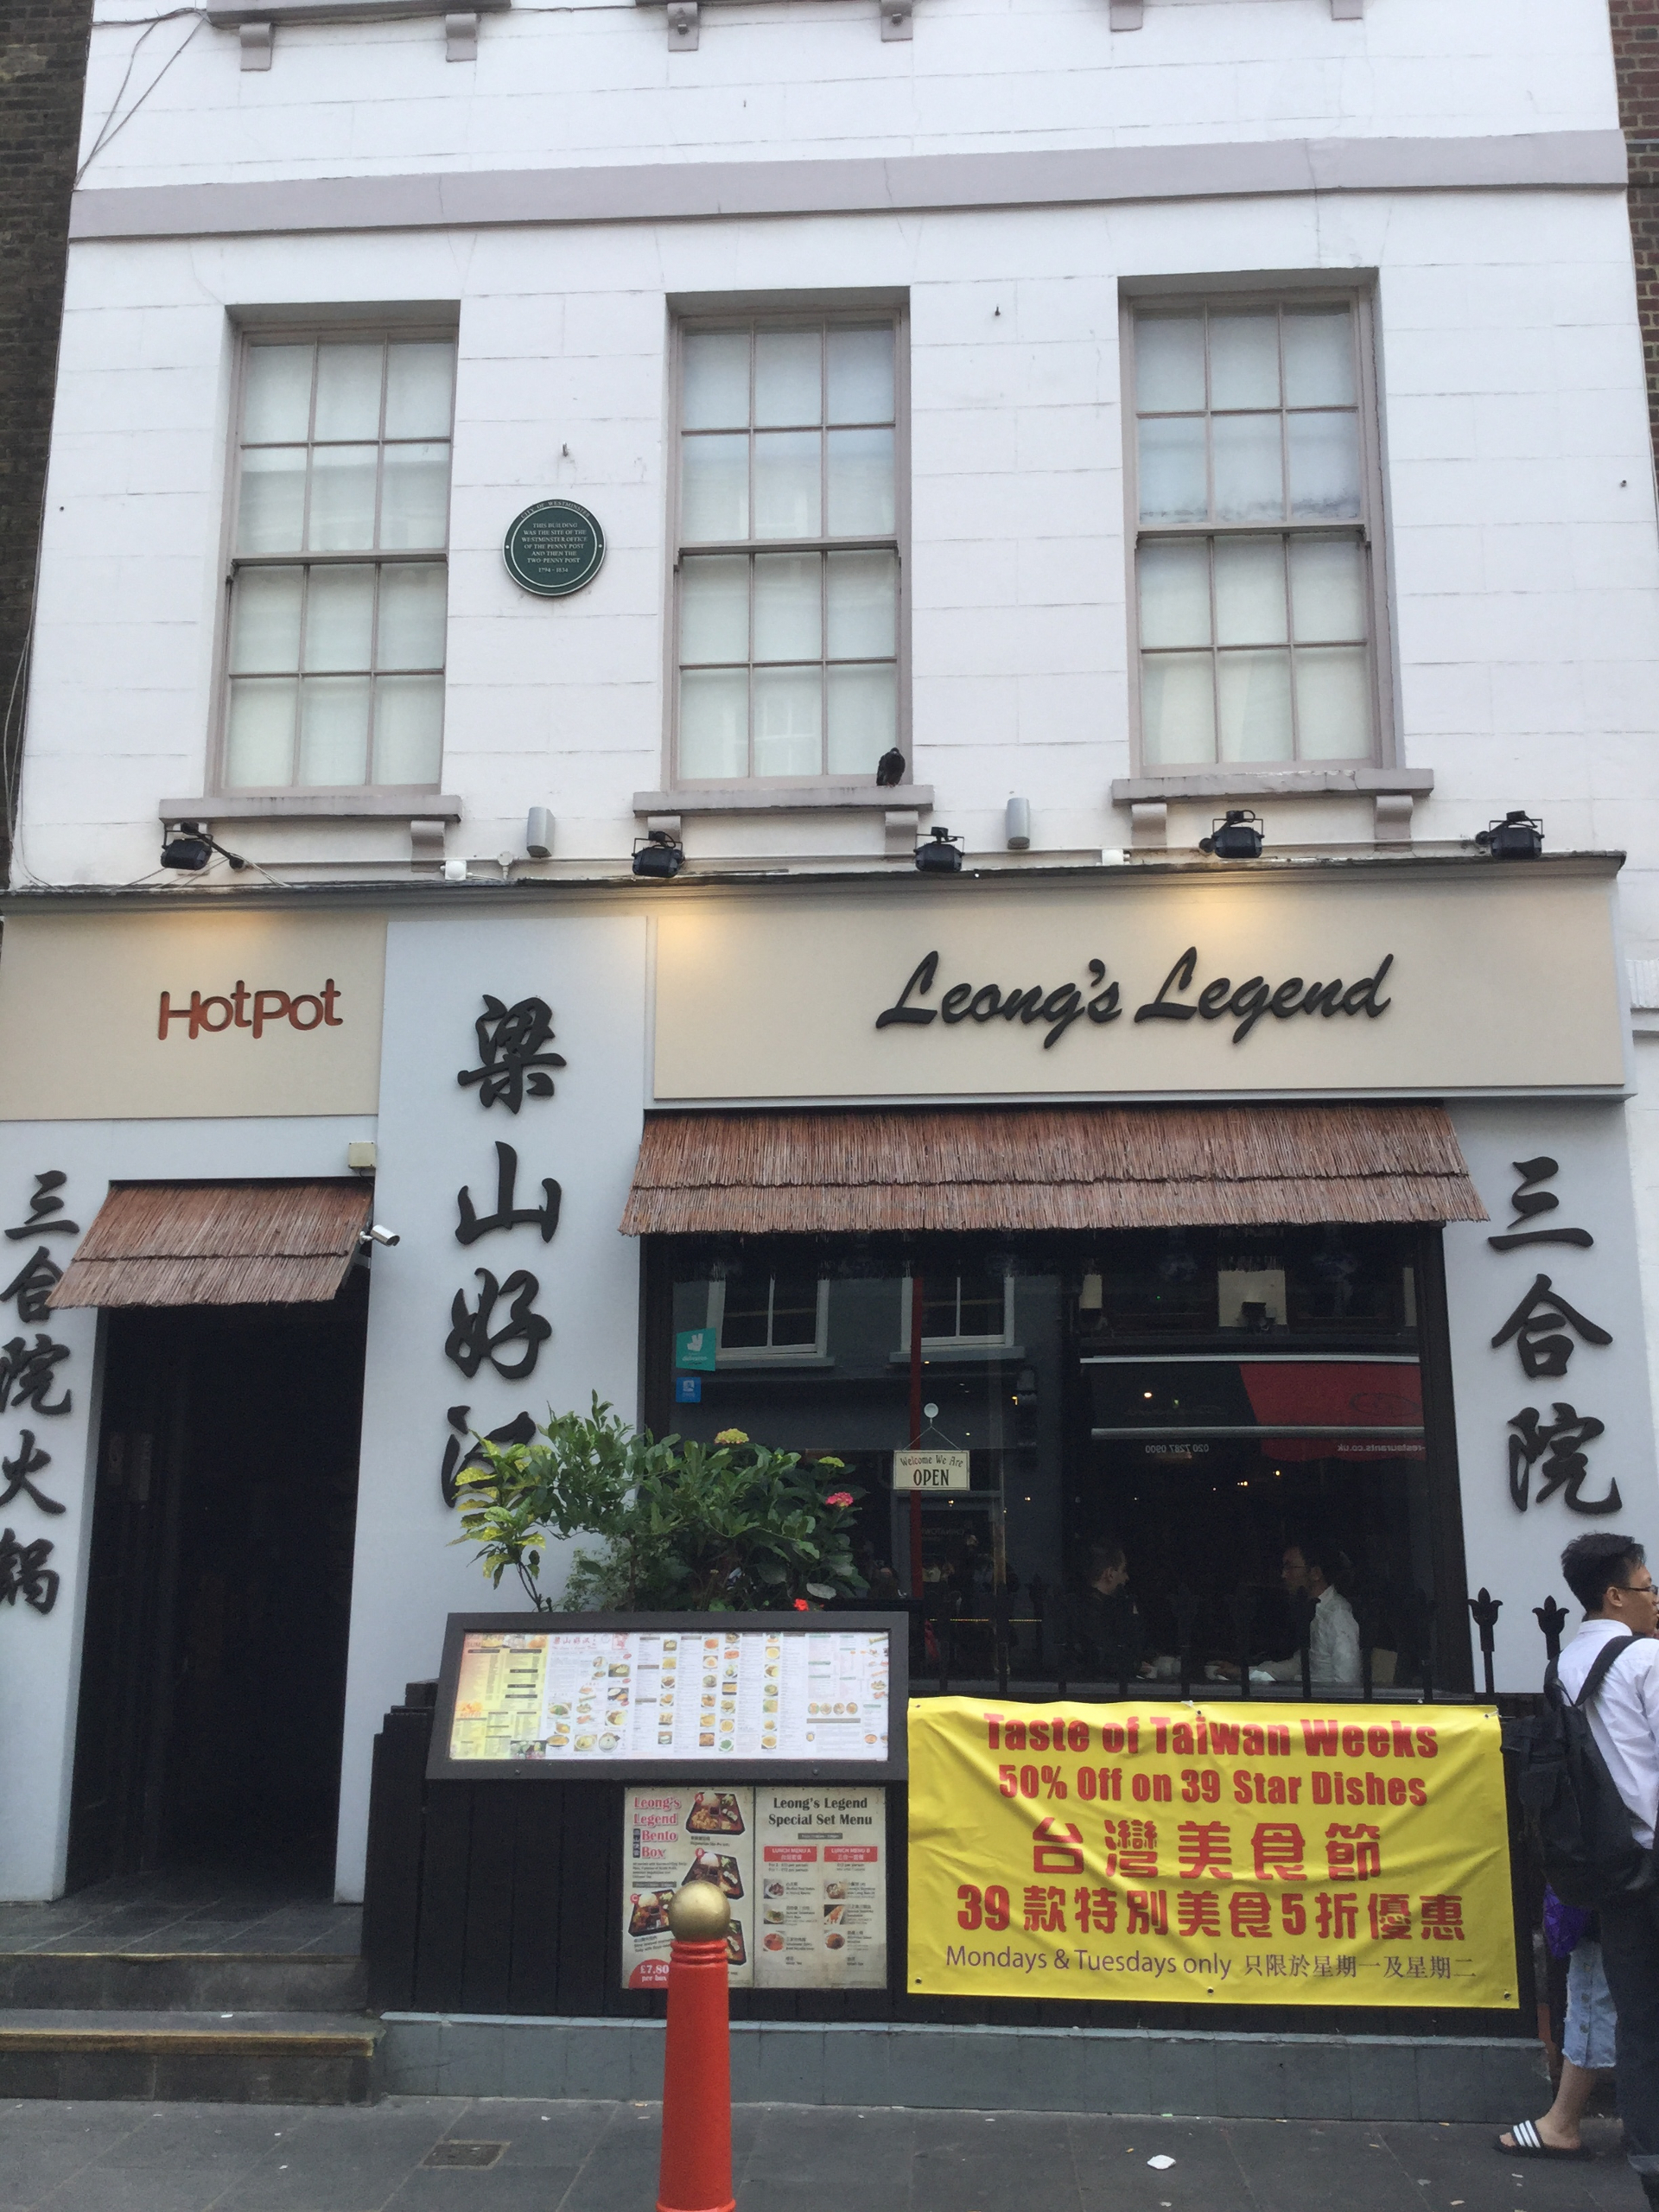 Der alte "Ronnie Scott's Jazz Club" ist mittlerweile ein asiatisches Restaurant (Gerrard Street 39, London). 1965 zog der Club in die Frith Street 47.